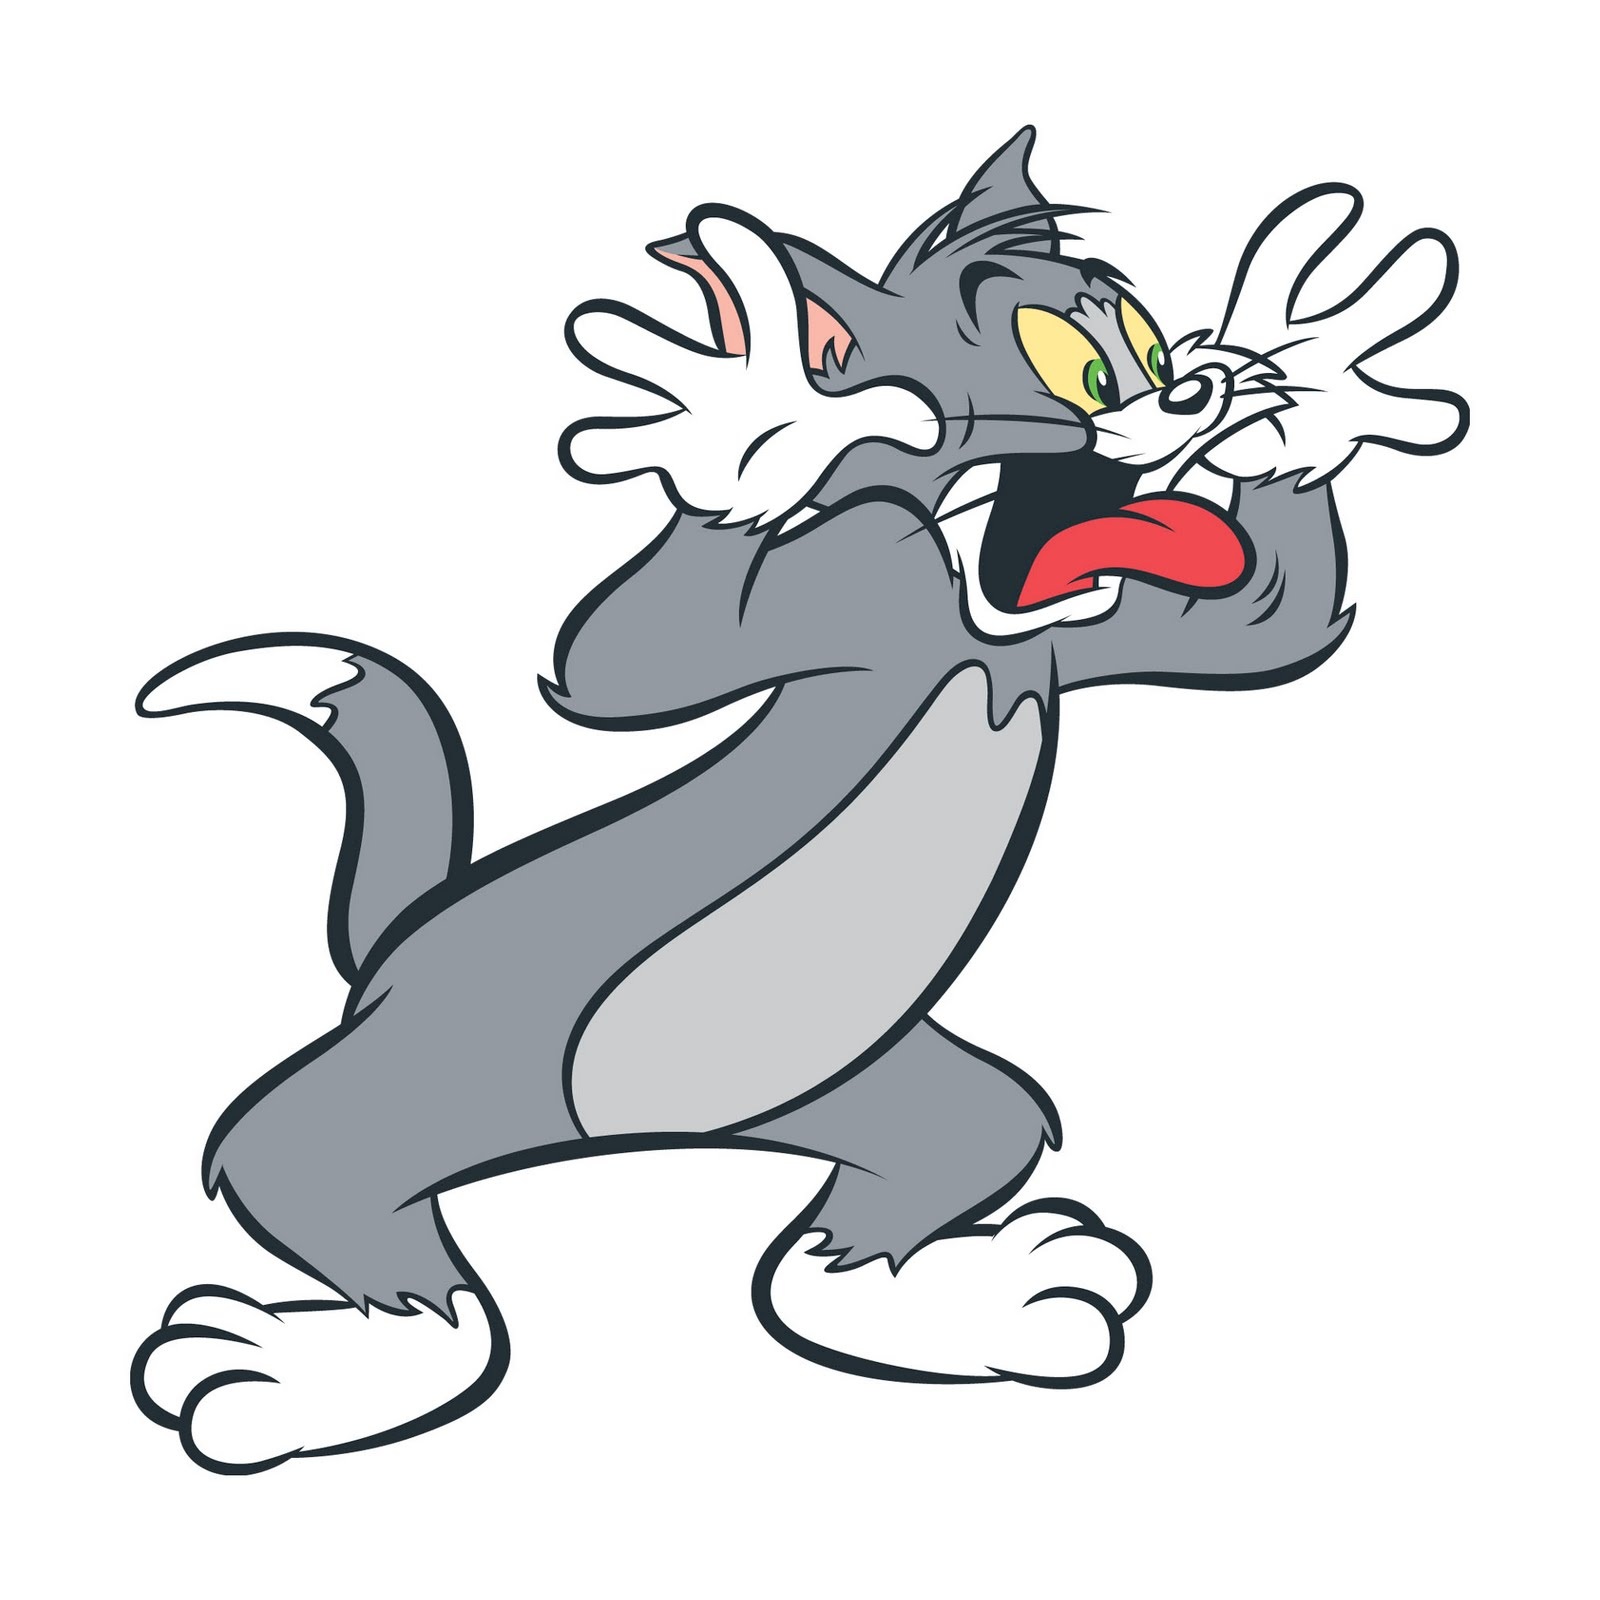 Gambar Kartun Lucu Tom And Jerry Terbaru Top Gambar